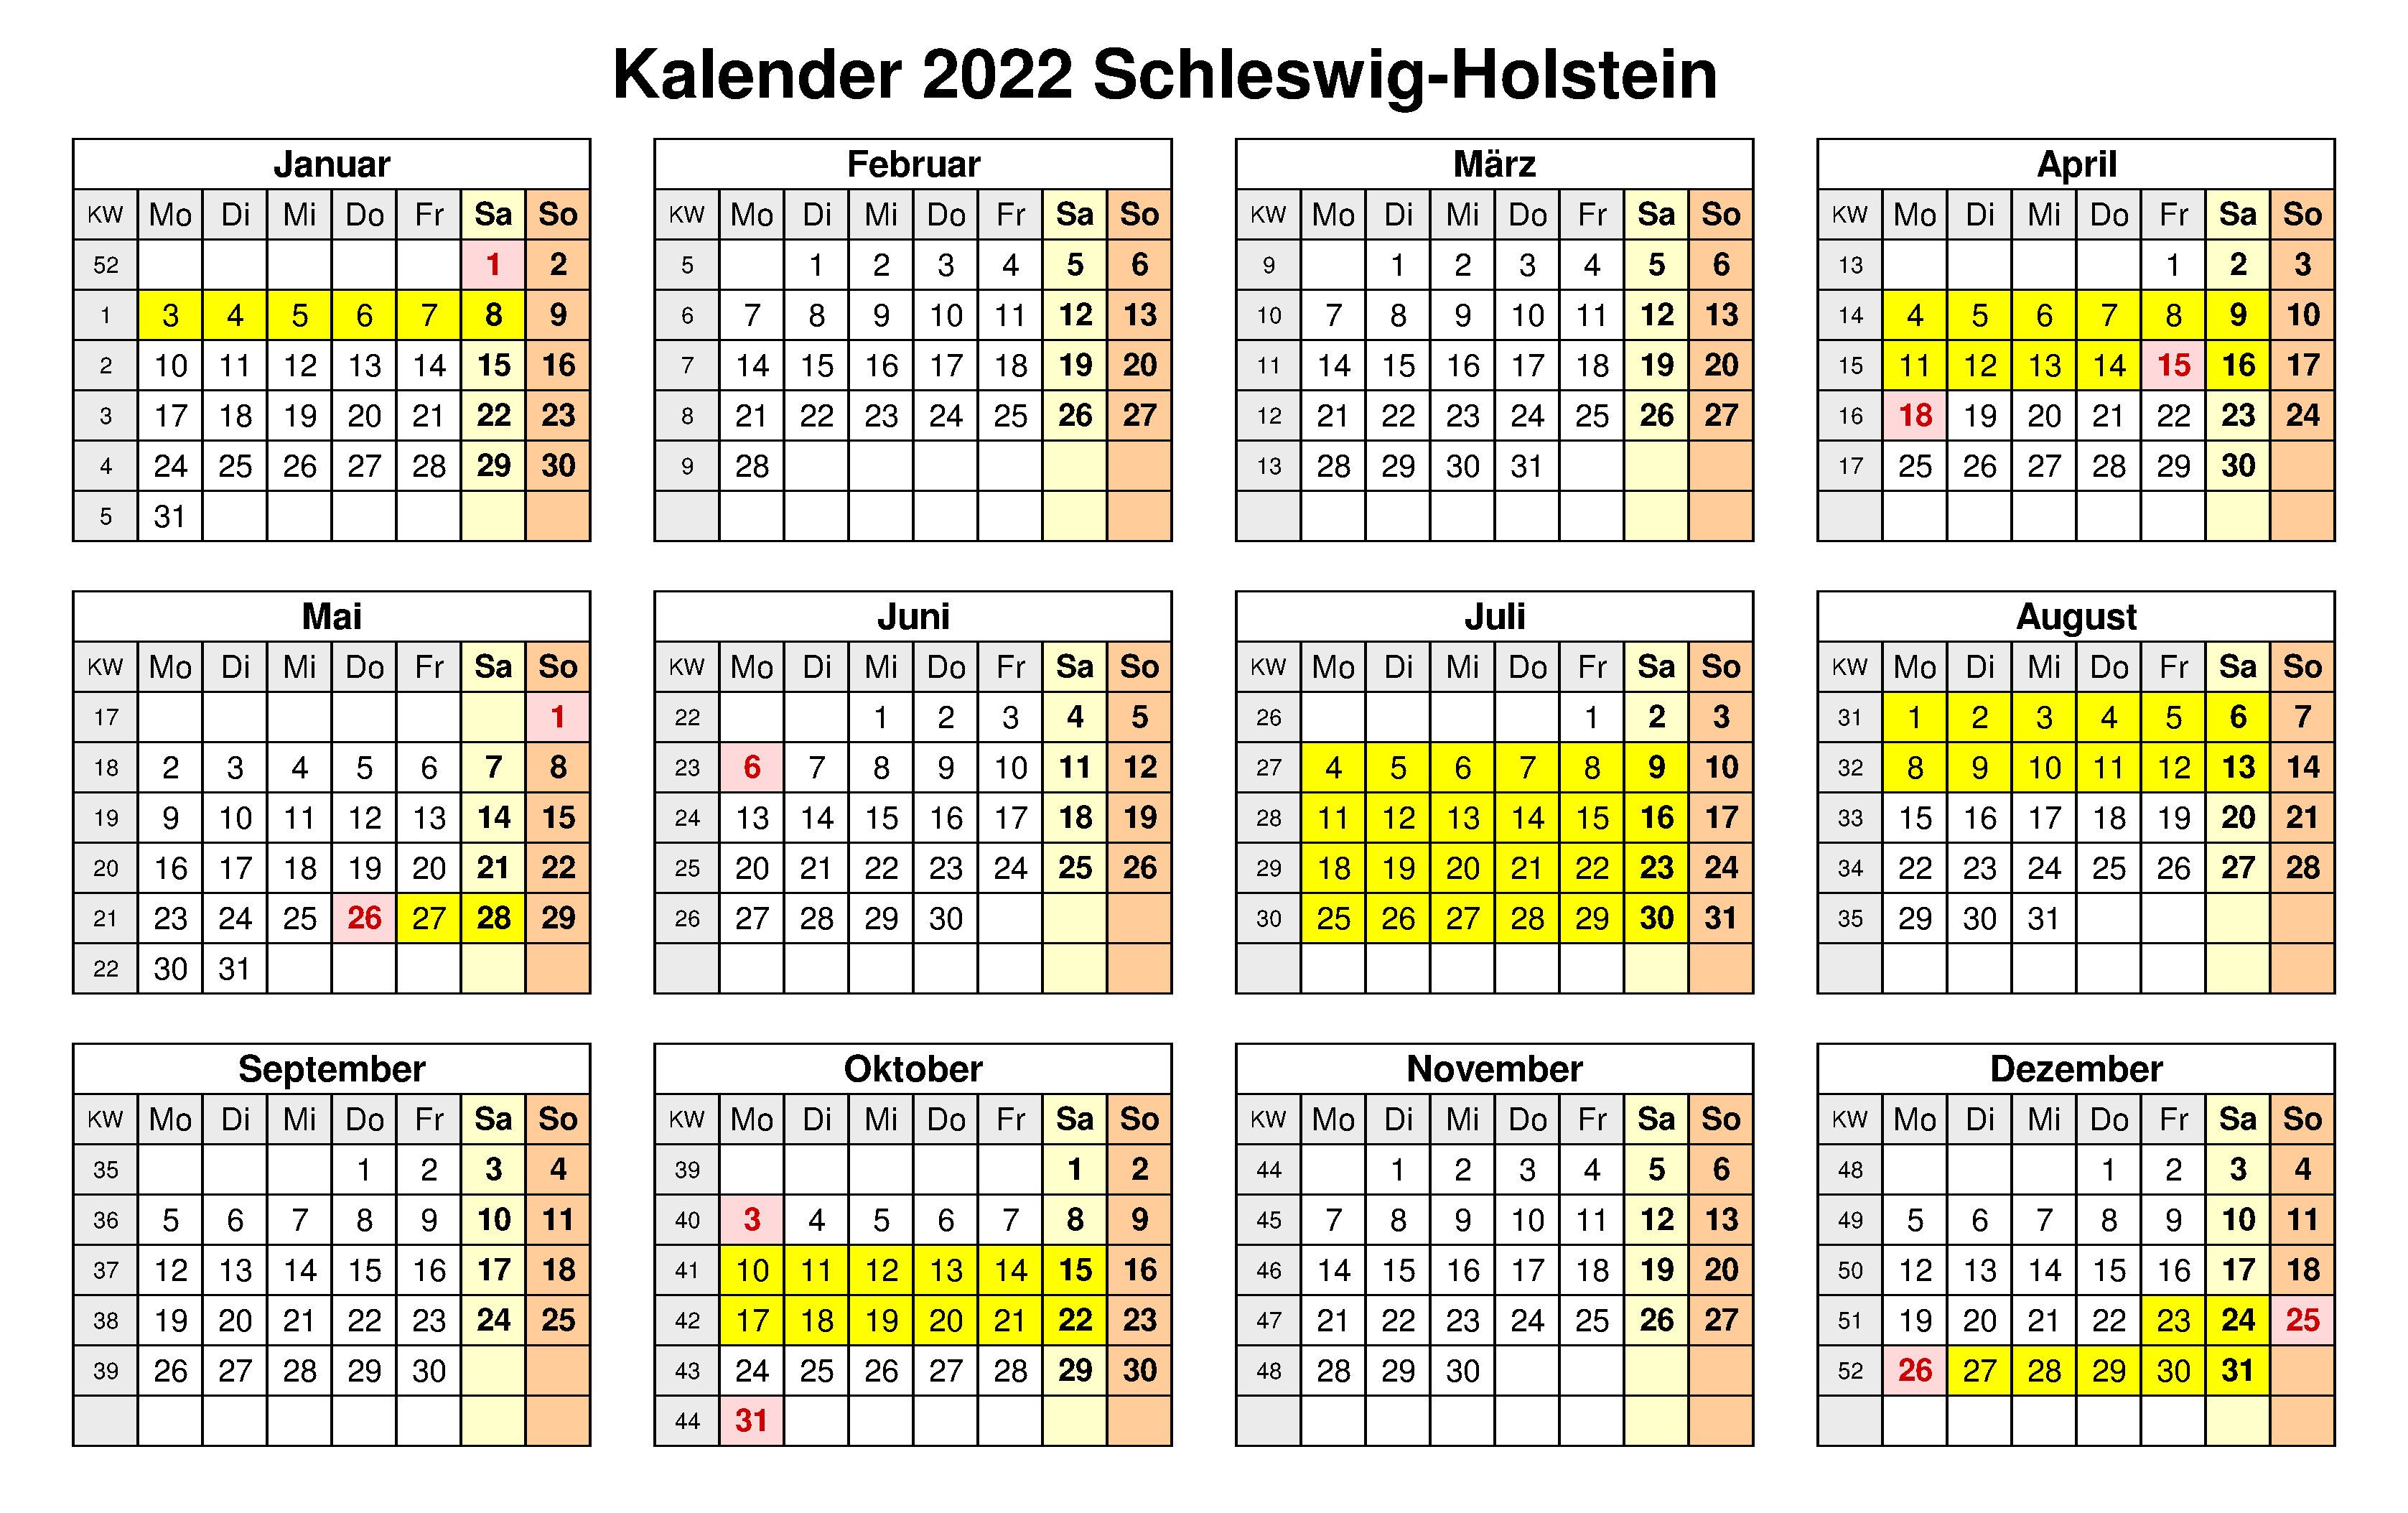 Kalender Schleswig-Holstein 2022 Zum Ausdrucken